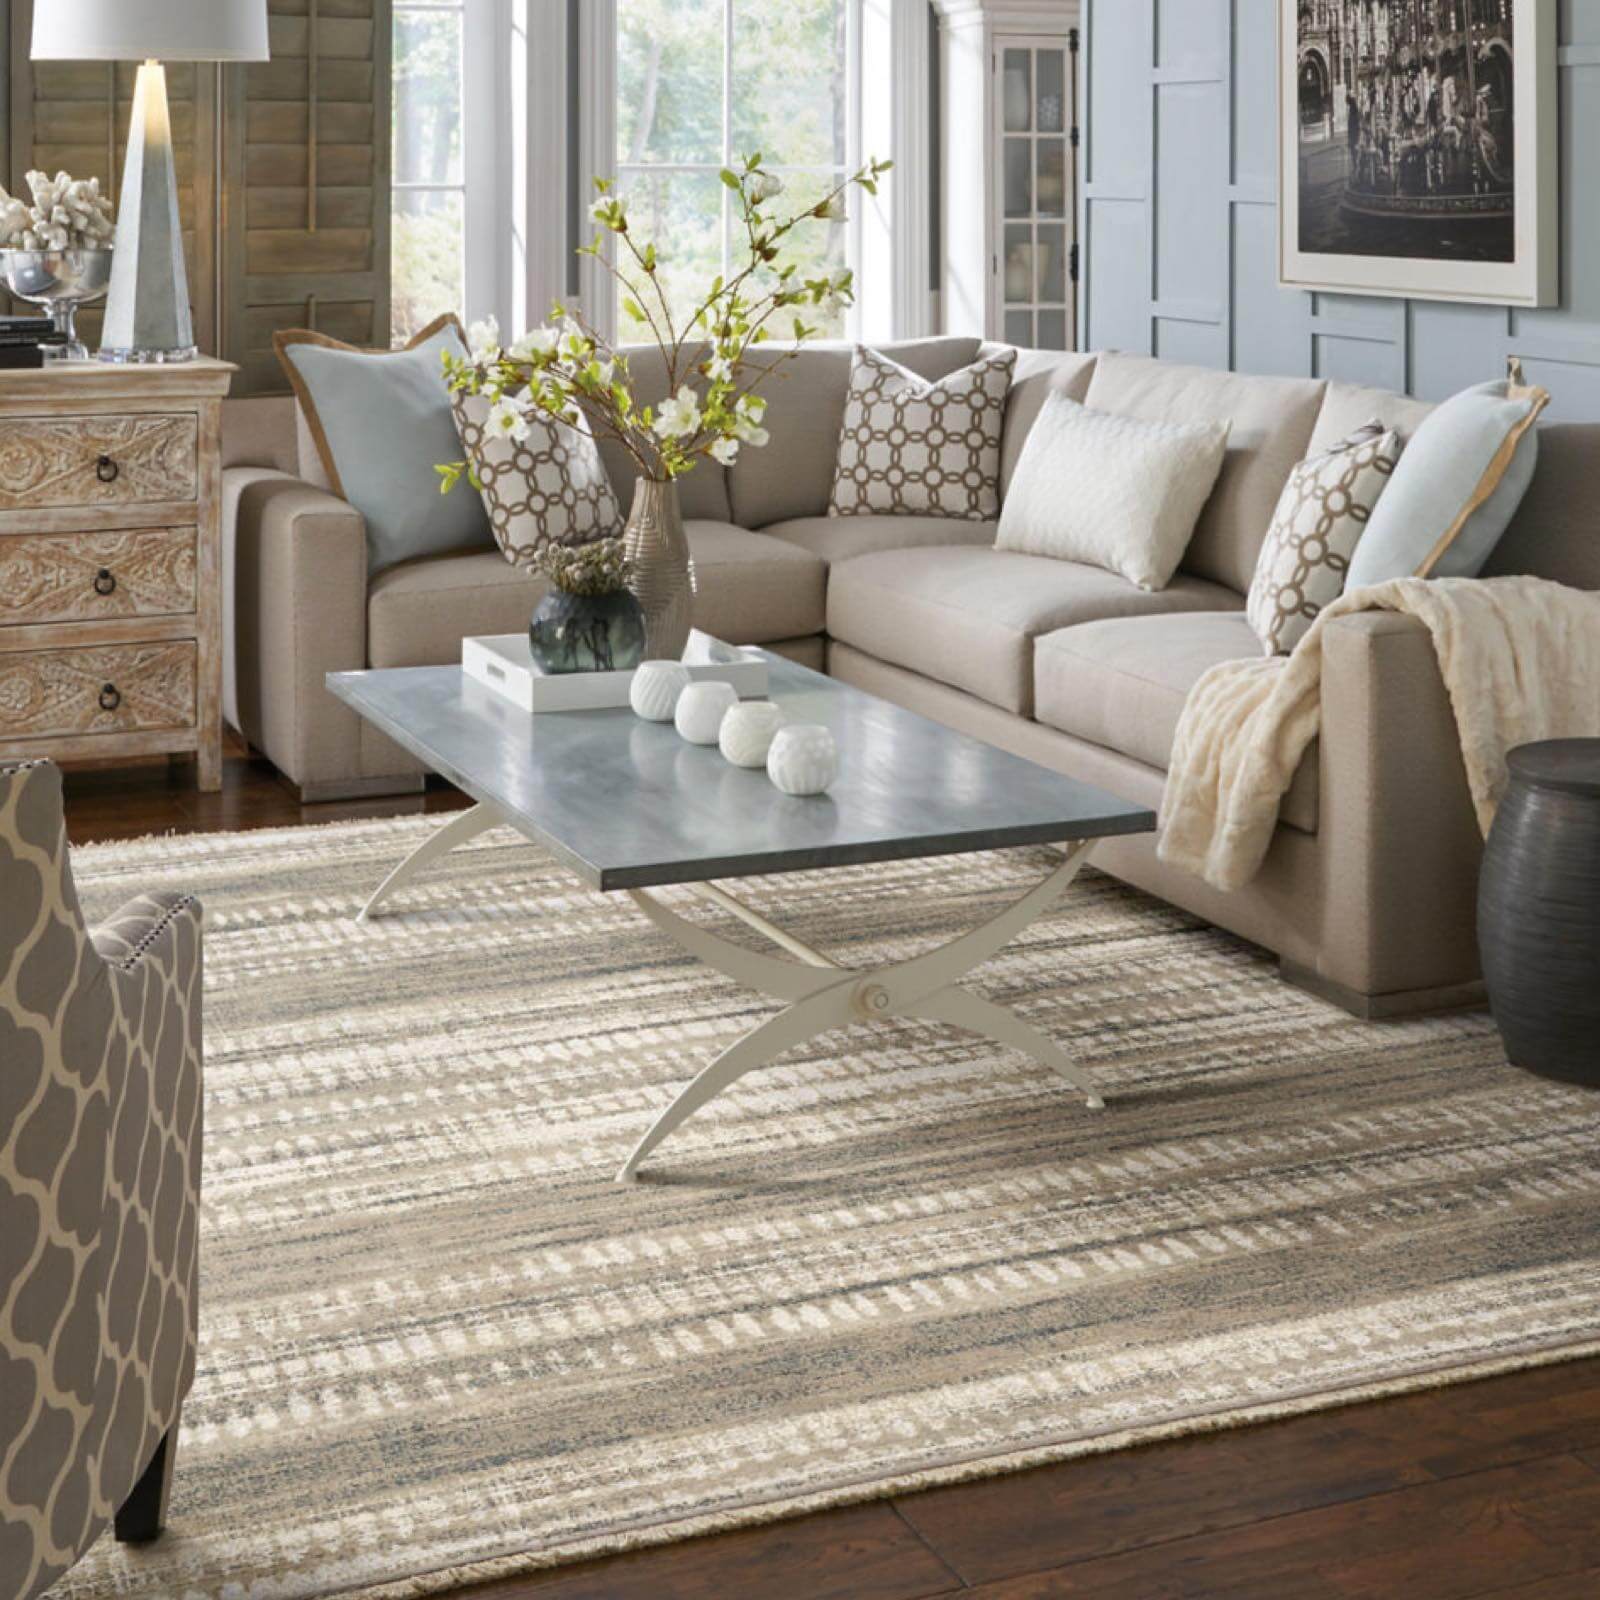 Area rug in modern living room | Kelly's Carpet Omaha | Omaha, NE